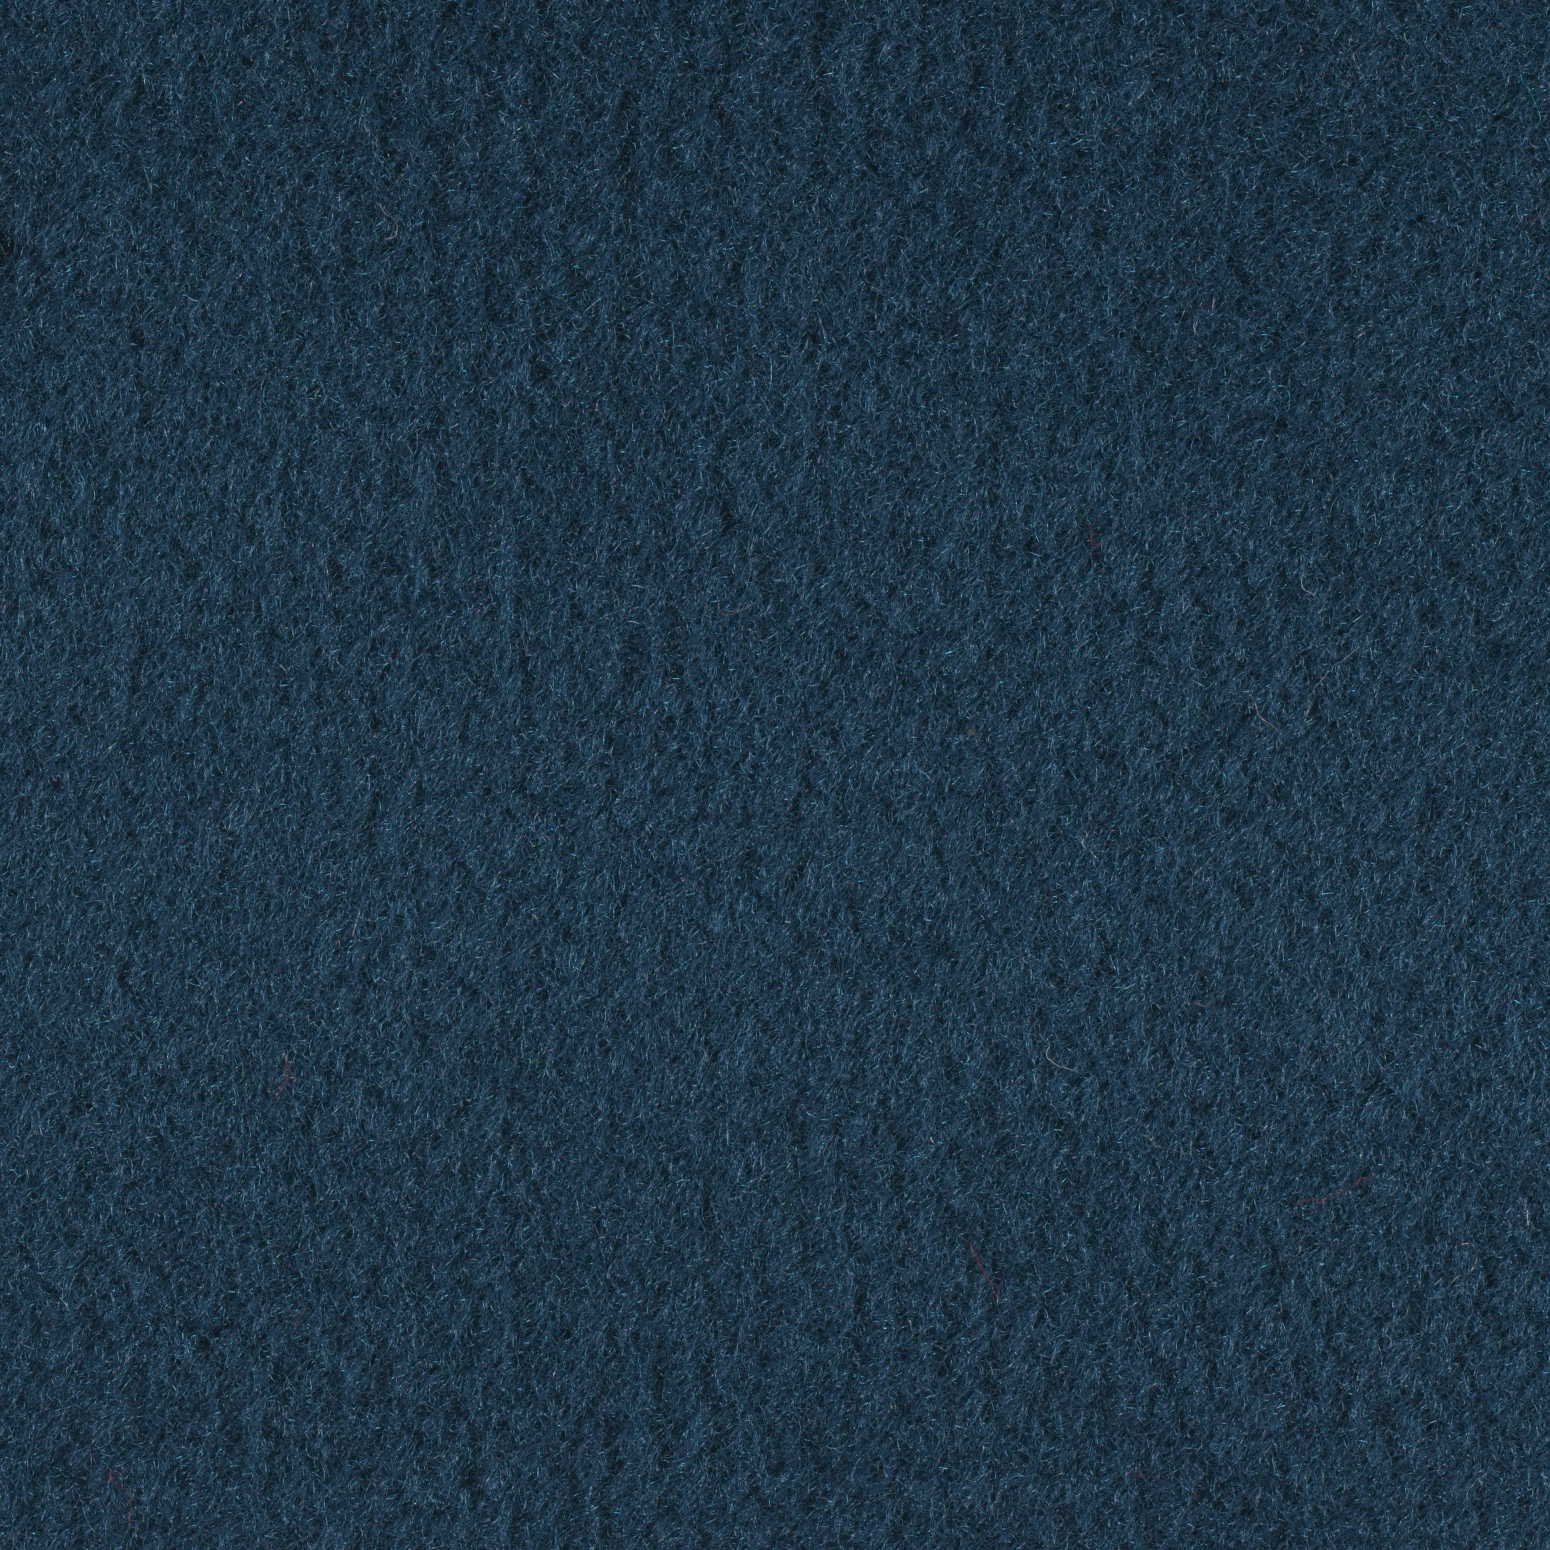 AMRL-BC200237MB6X20.125 * Lancer Marine Carpet 6 X 20 20oz Carpet- Cornflower